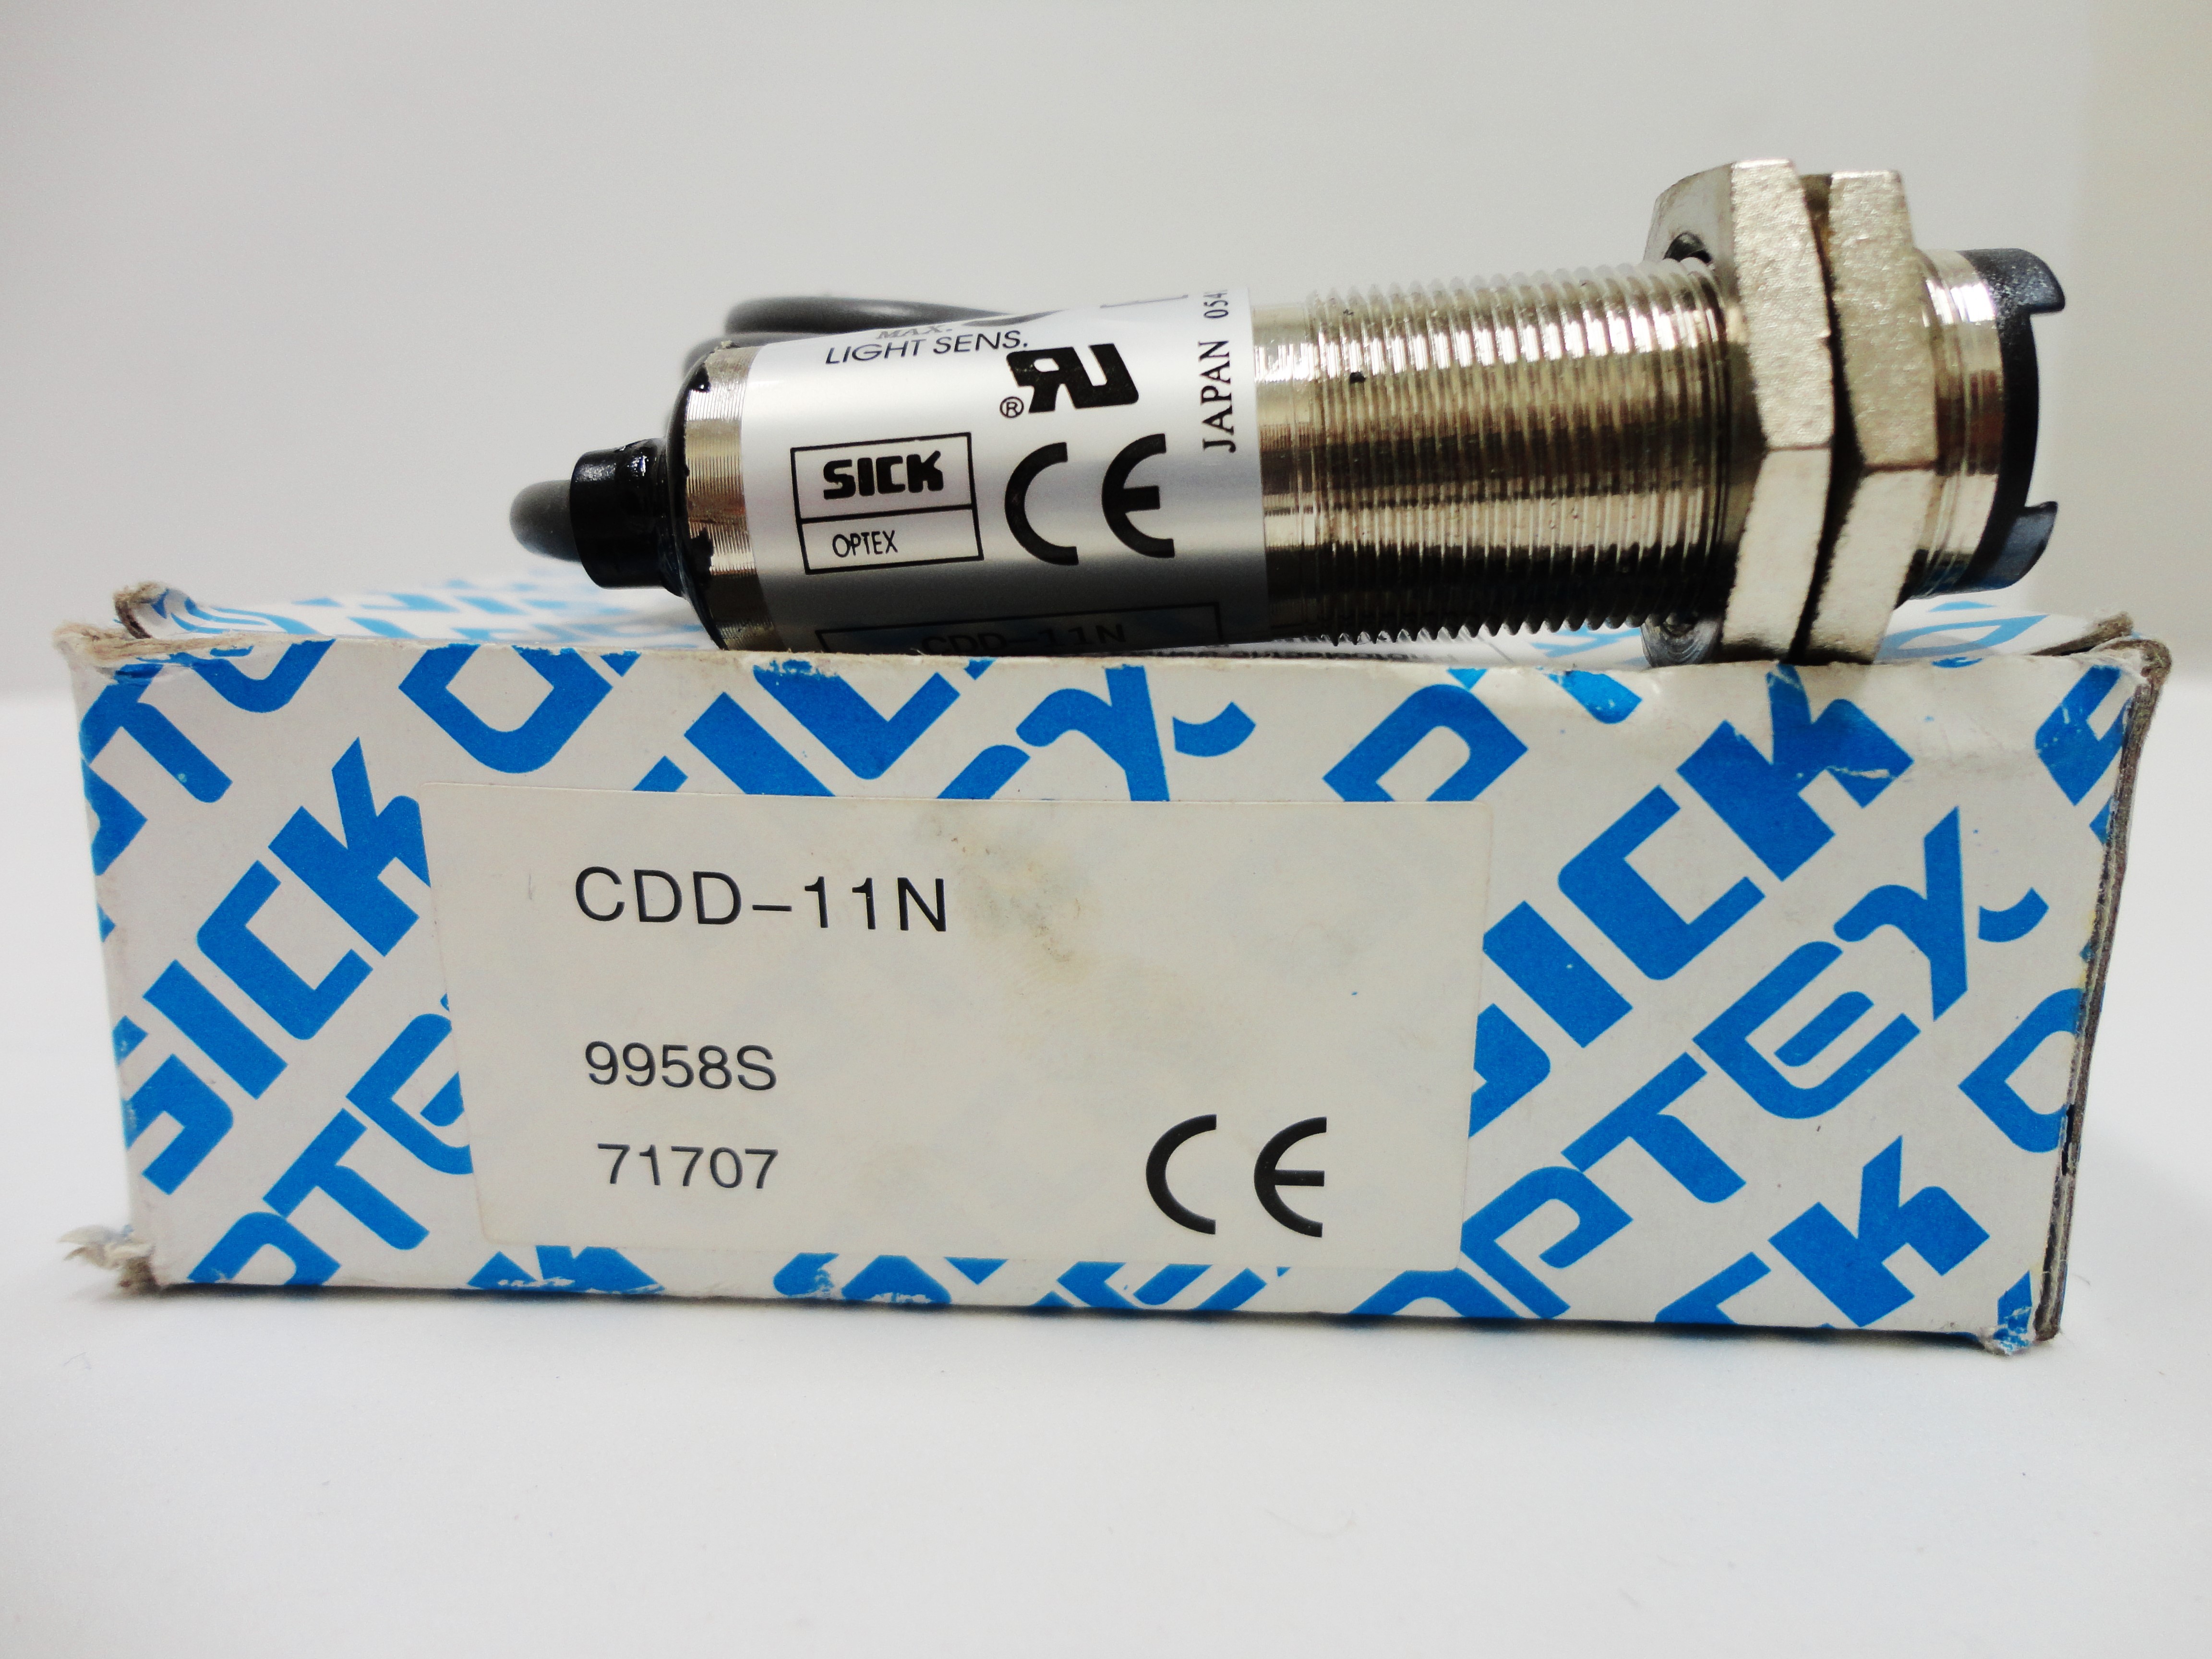 Sensor Reflexivo NPN Sick CDD-11N - baixo custo e alta qualidade